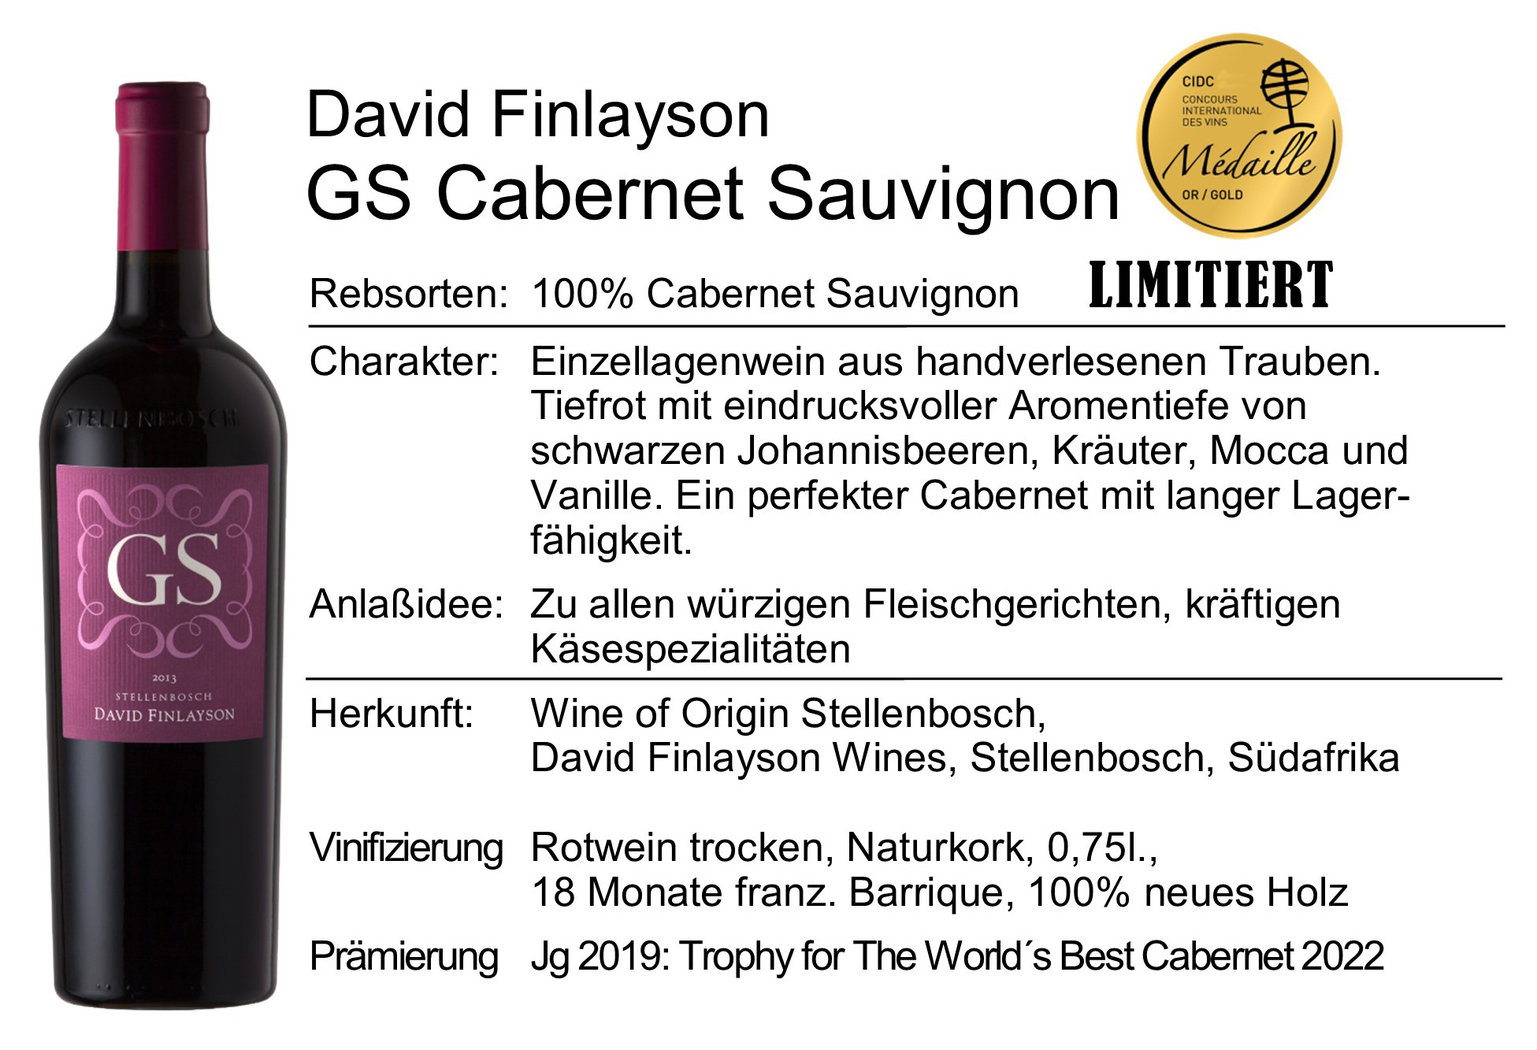 David Finlayson GS Cabernet Sauvignon 2019